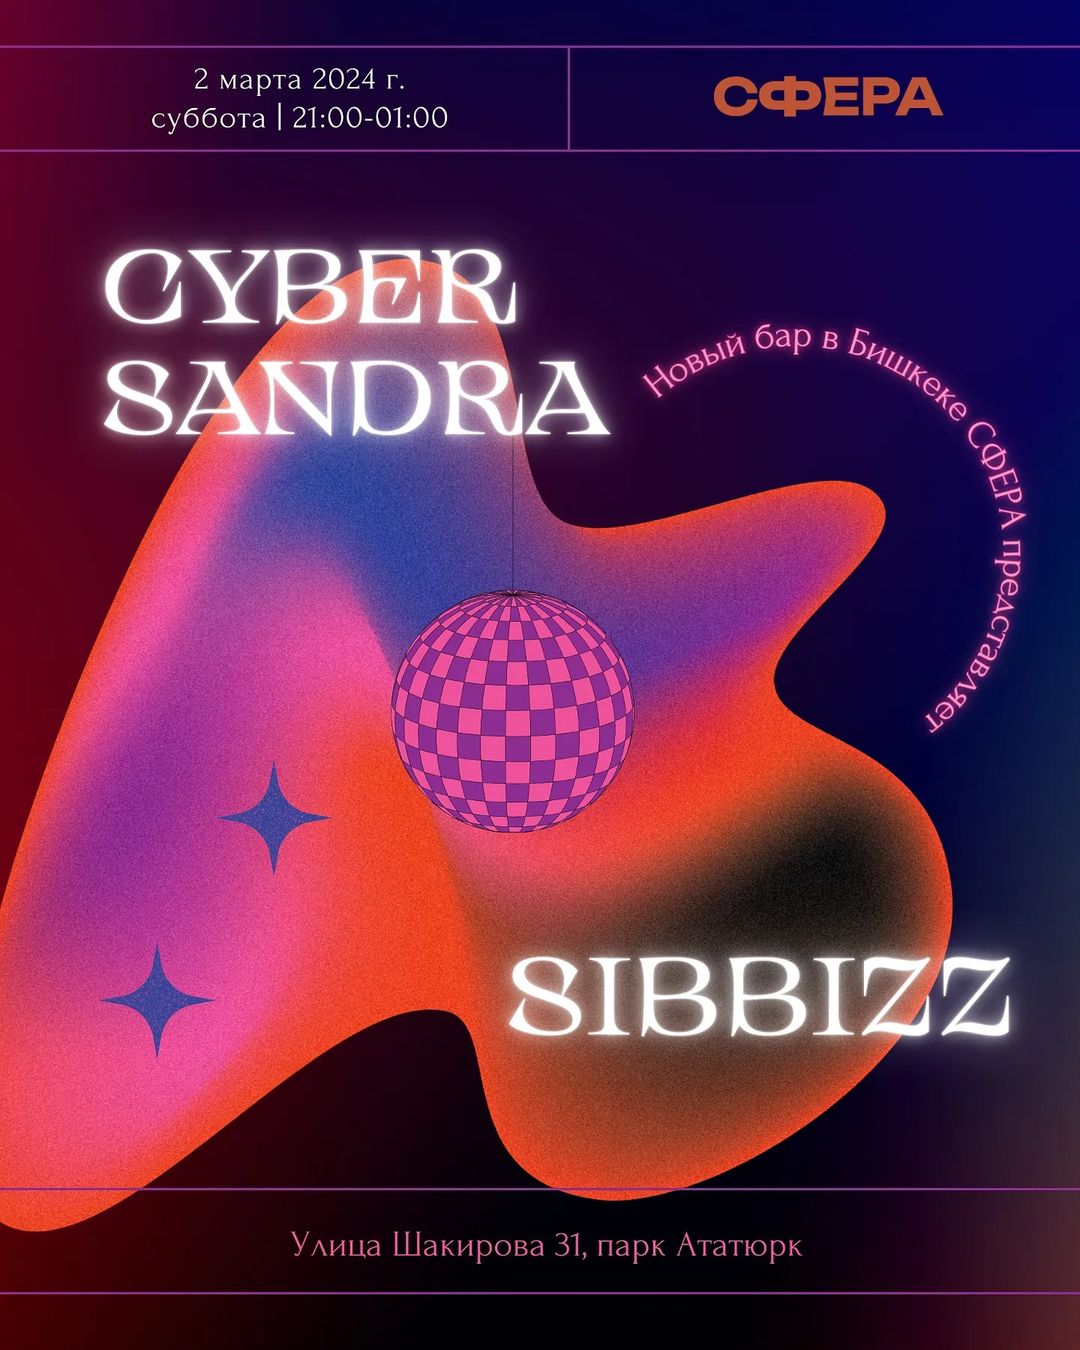 CyberSandra & SIBBIZZ